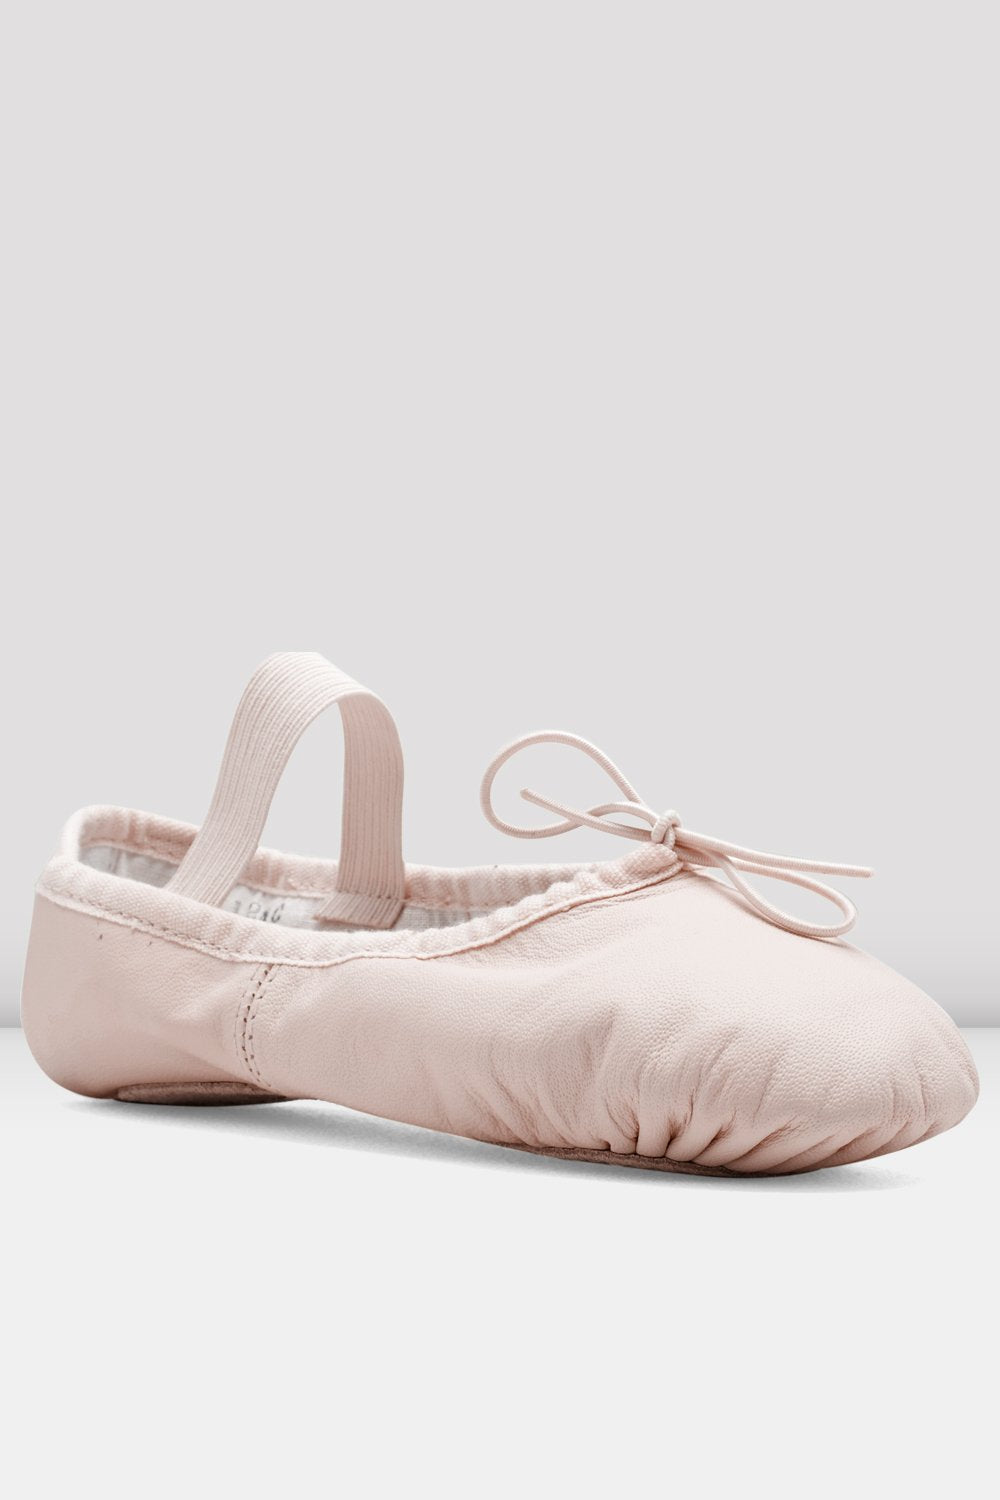 Ladies Dansoft Leather Ballet Shoes